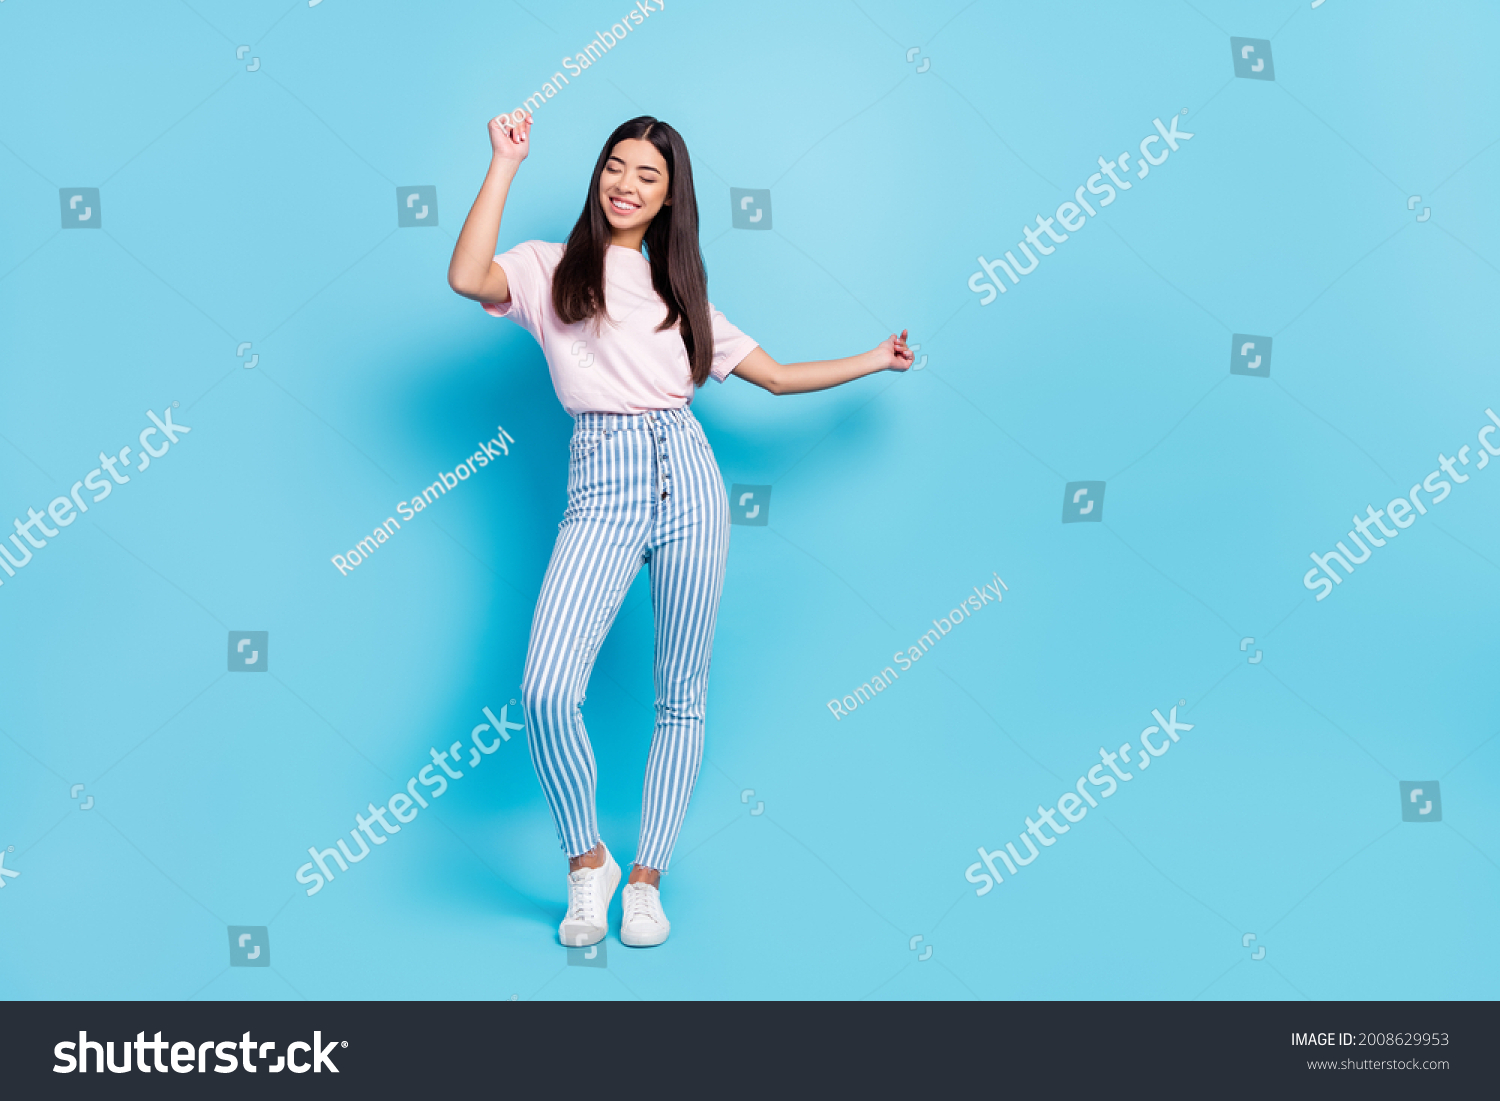 Volllange Körpergröße mit Blick auf attraktive, fröhliche, schlenderes, sorgenfreies Mädchen, das tanzt einzeln auf hellblauem Hintergrund – Stockfoto